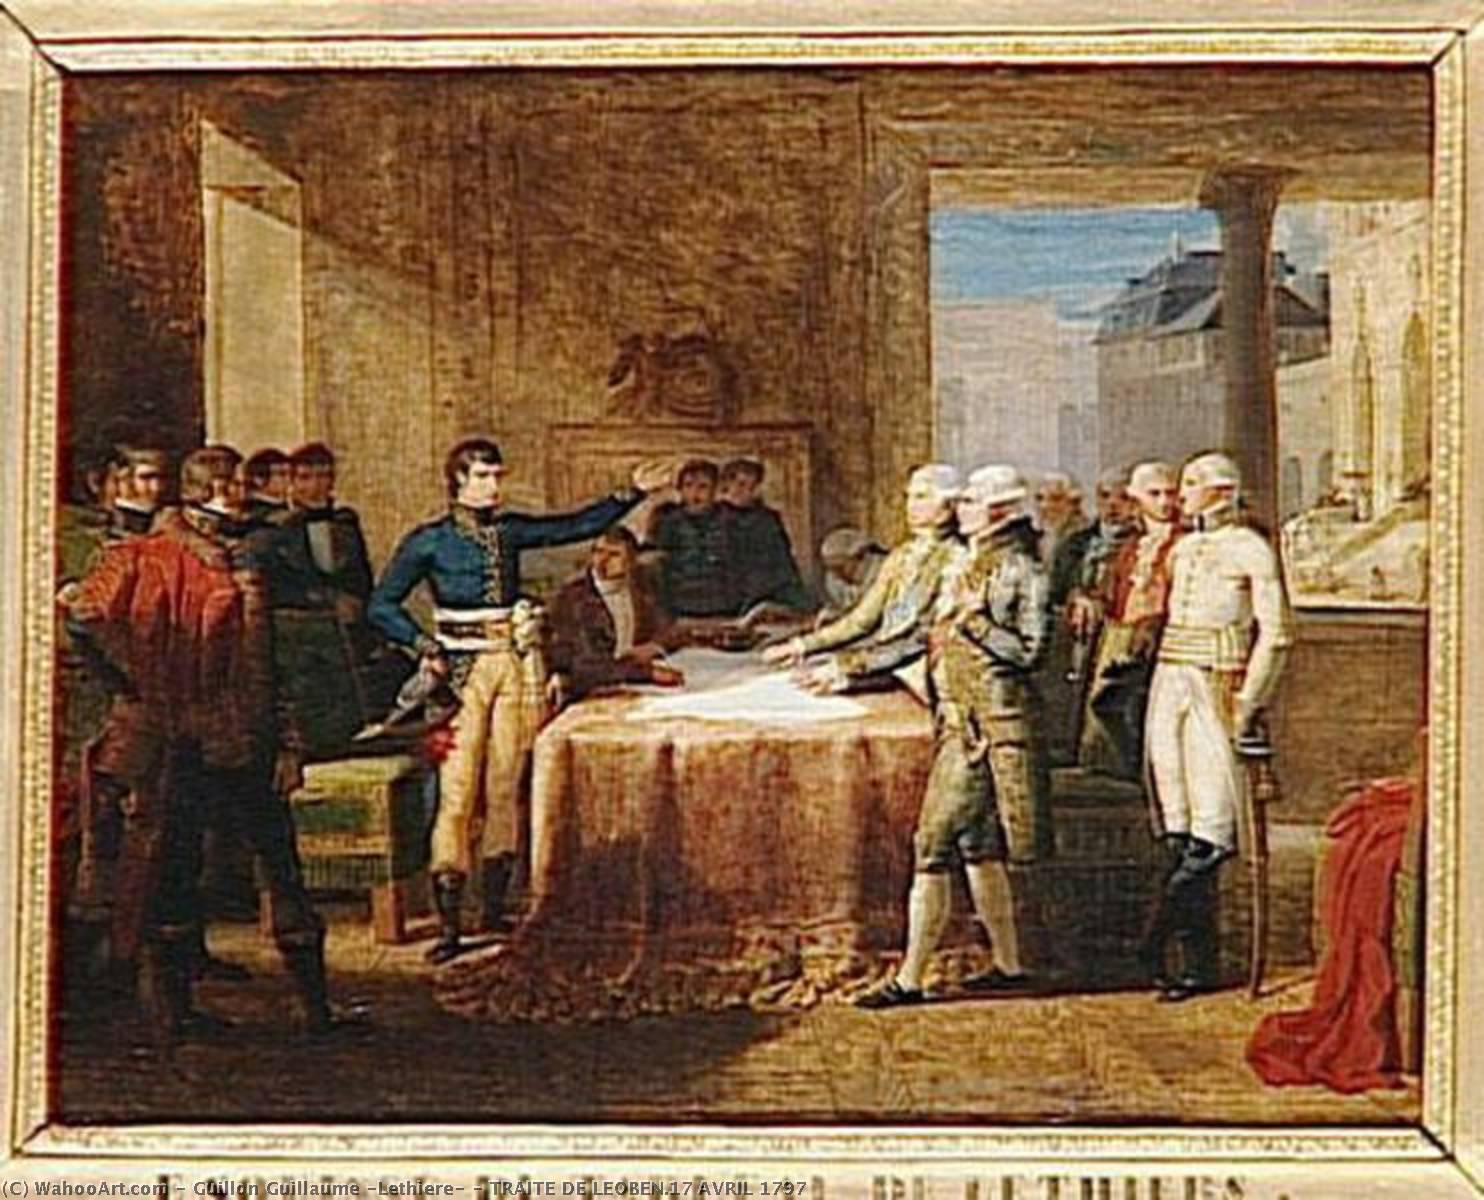 Buy Museum Art Reproductions TRAITE DE LEOBEN.17 AVRIL 1797 by Guillon Guillaume (Lethiere) (1760-1832) | ArtsDot.com